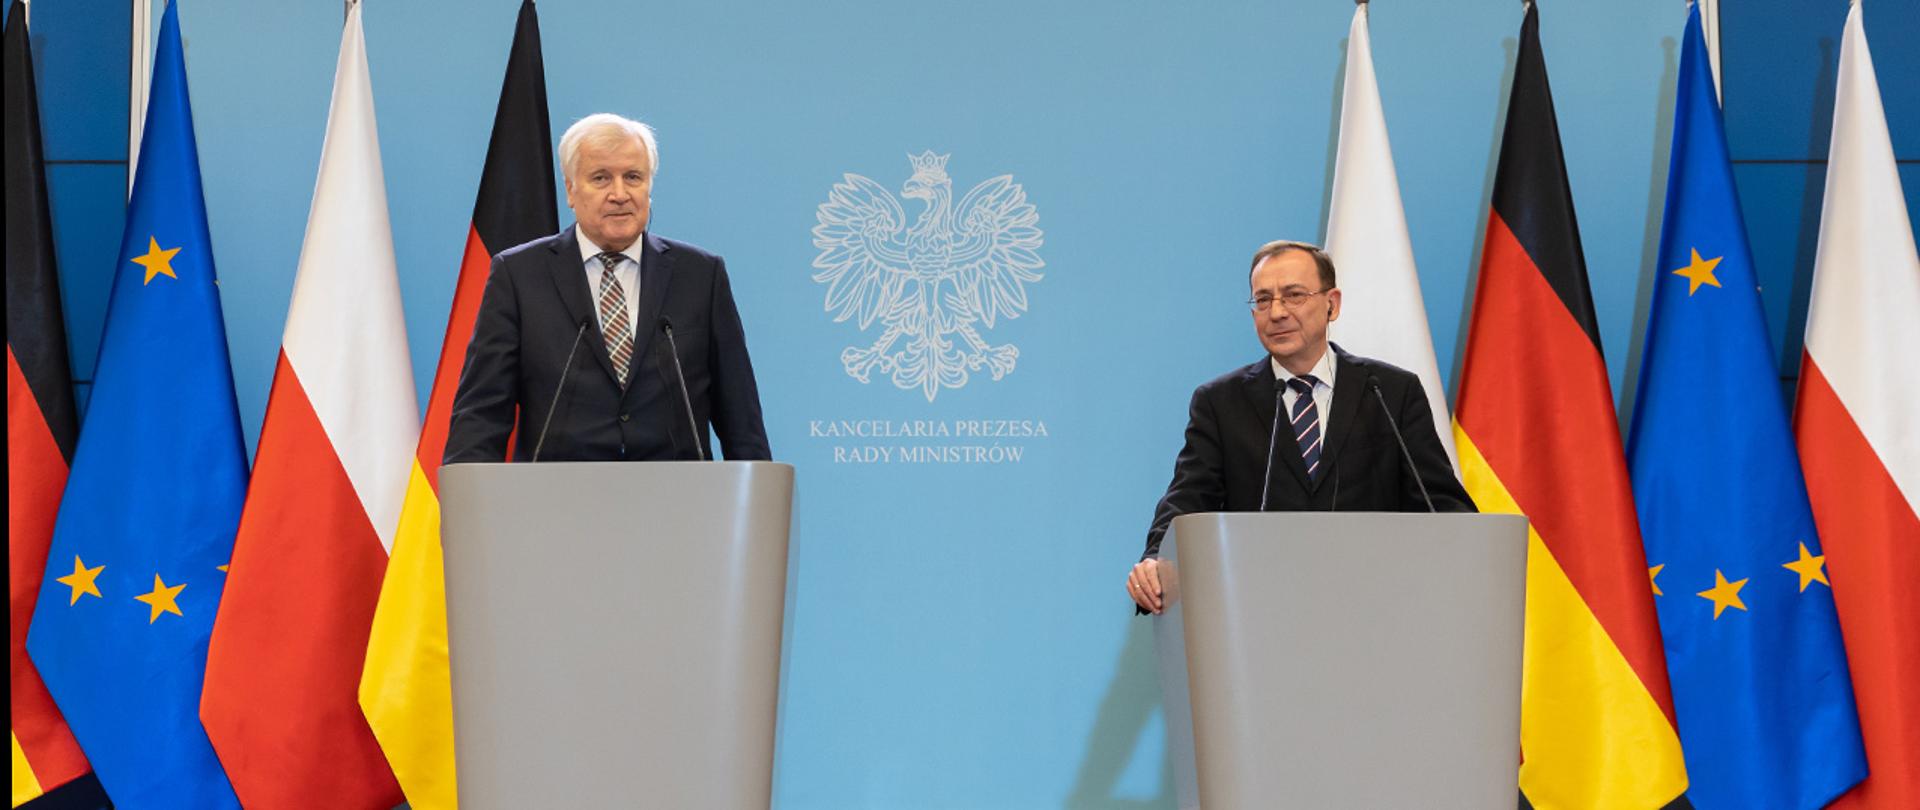 Na zdjęciu widać ministra Mariusza Kamińskiego i Horsta Seehofernera szefa niemieckiego MSW stojących za mównicami w trakcie konferencji prasowej, w tle widać flagi Niemiec, Polski i UE.